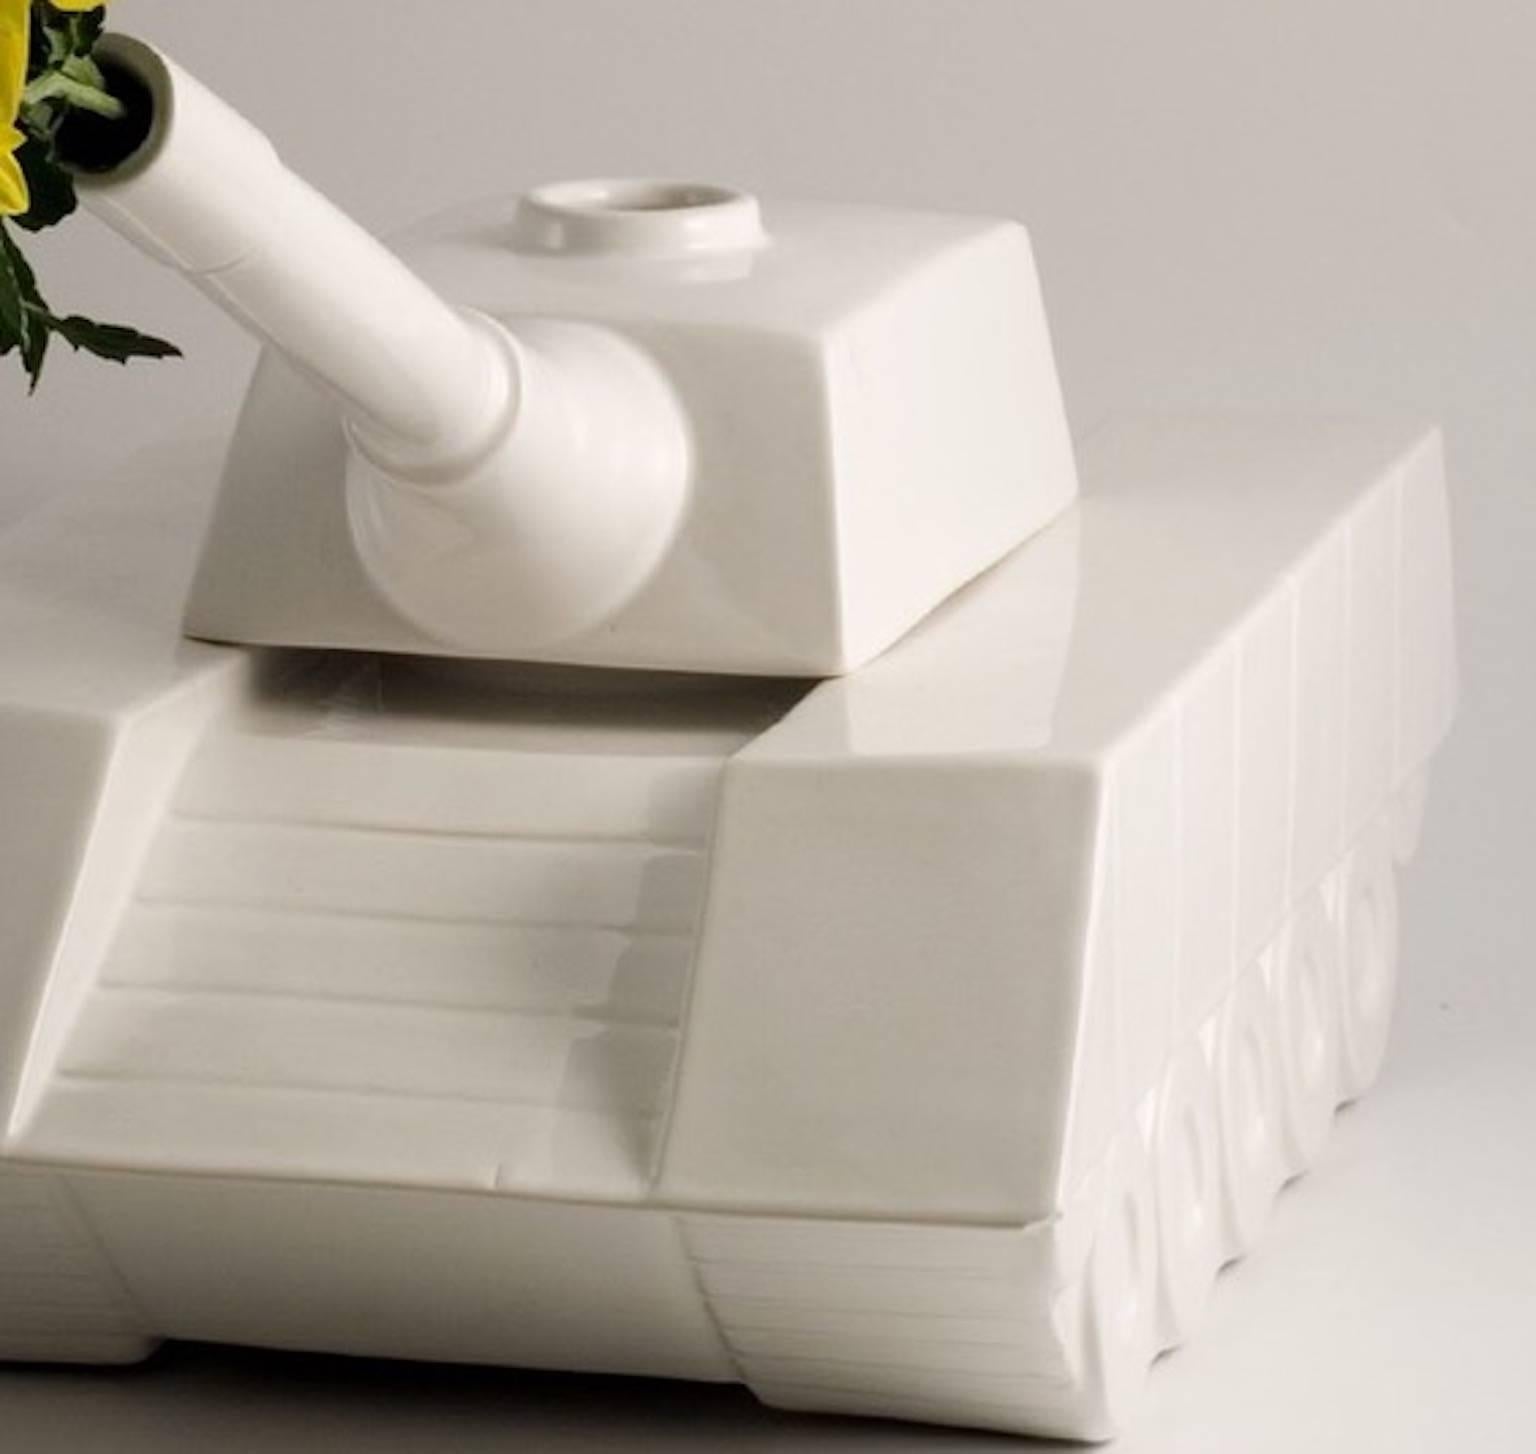 Keramikskulptur Love Tank aus der Kollektion Love Tank, entworfen von Andrea Visconti für Superego Editions. Limitierte Auflage von 99 Stück. Signiert und nummeriert.